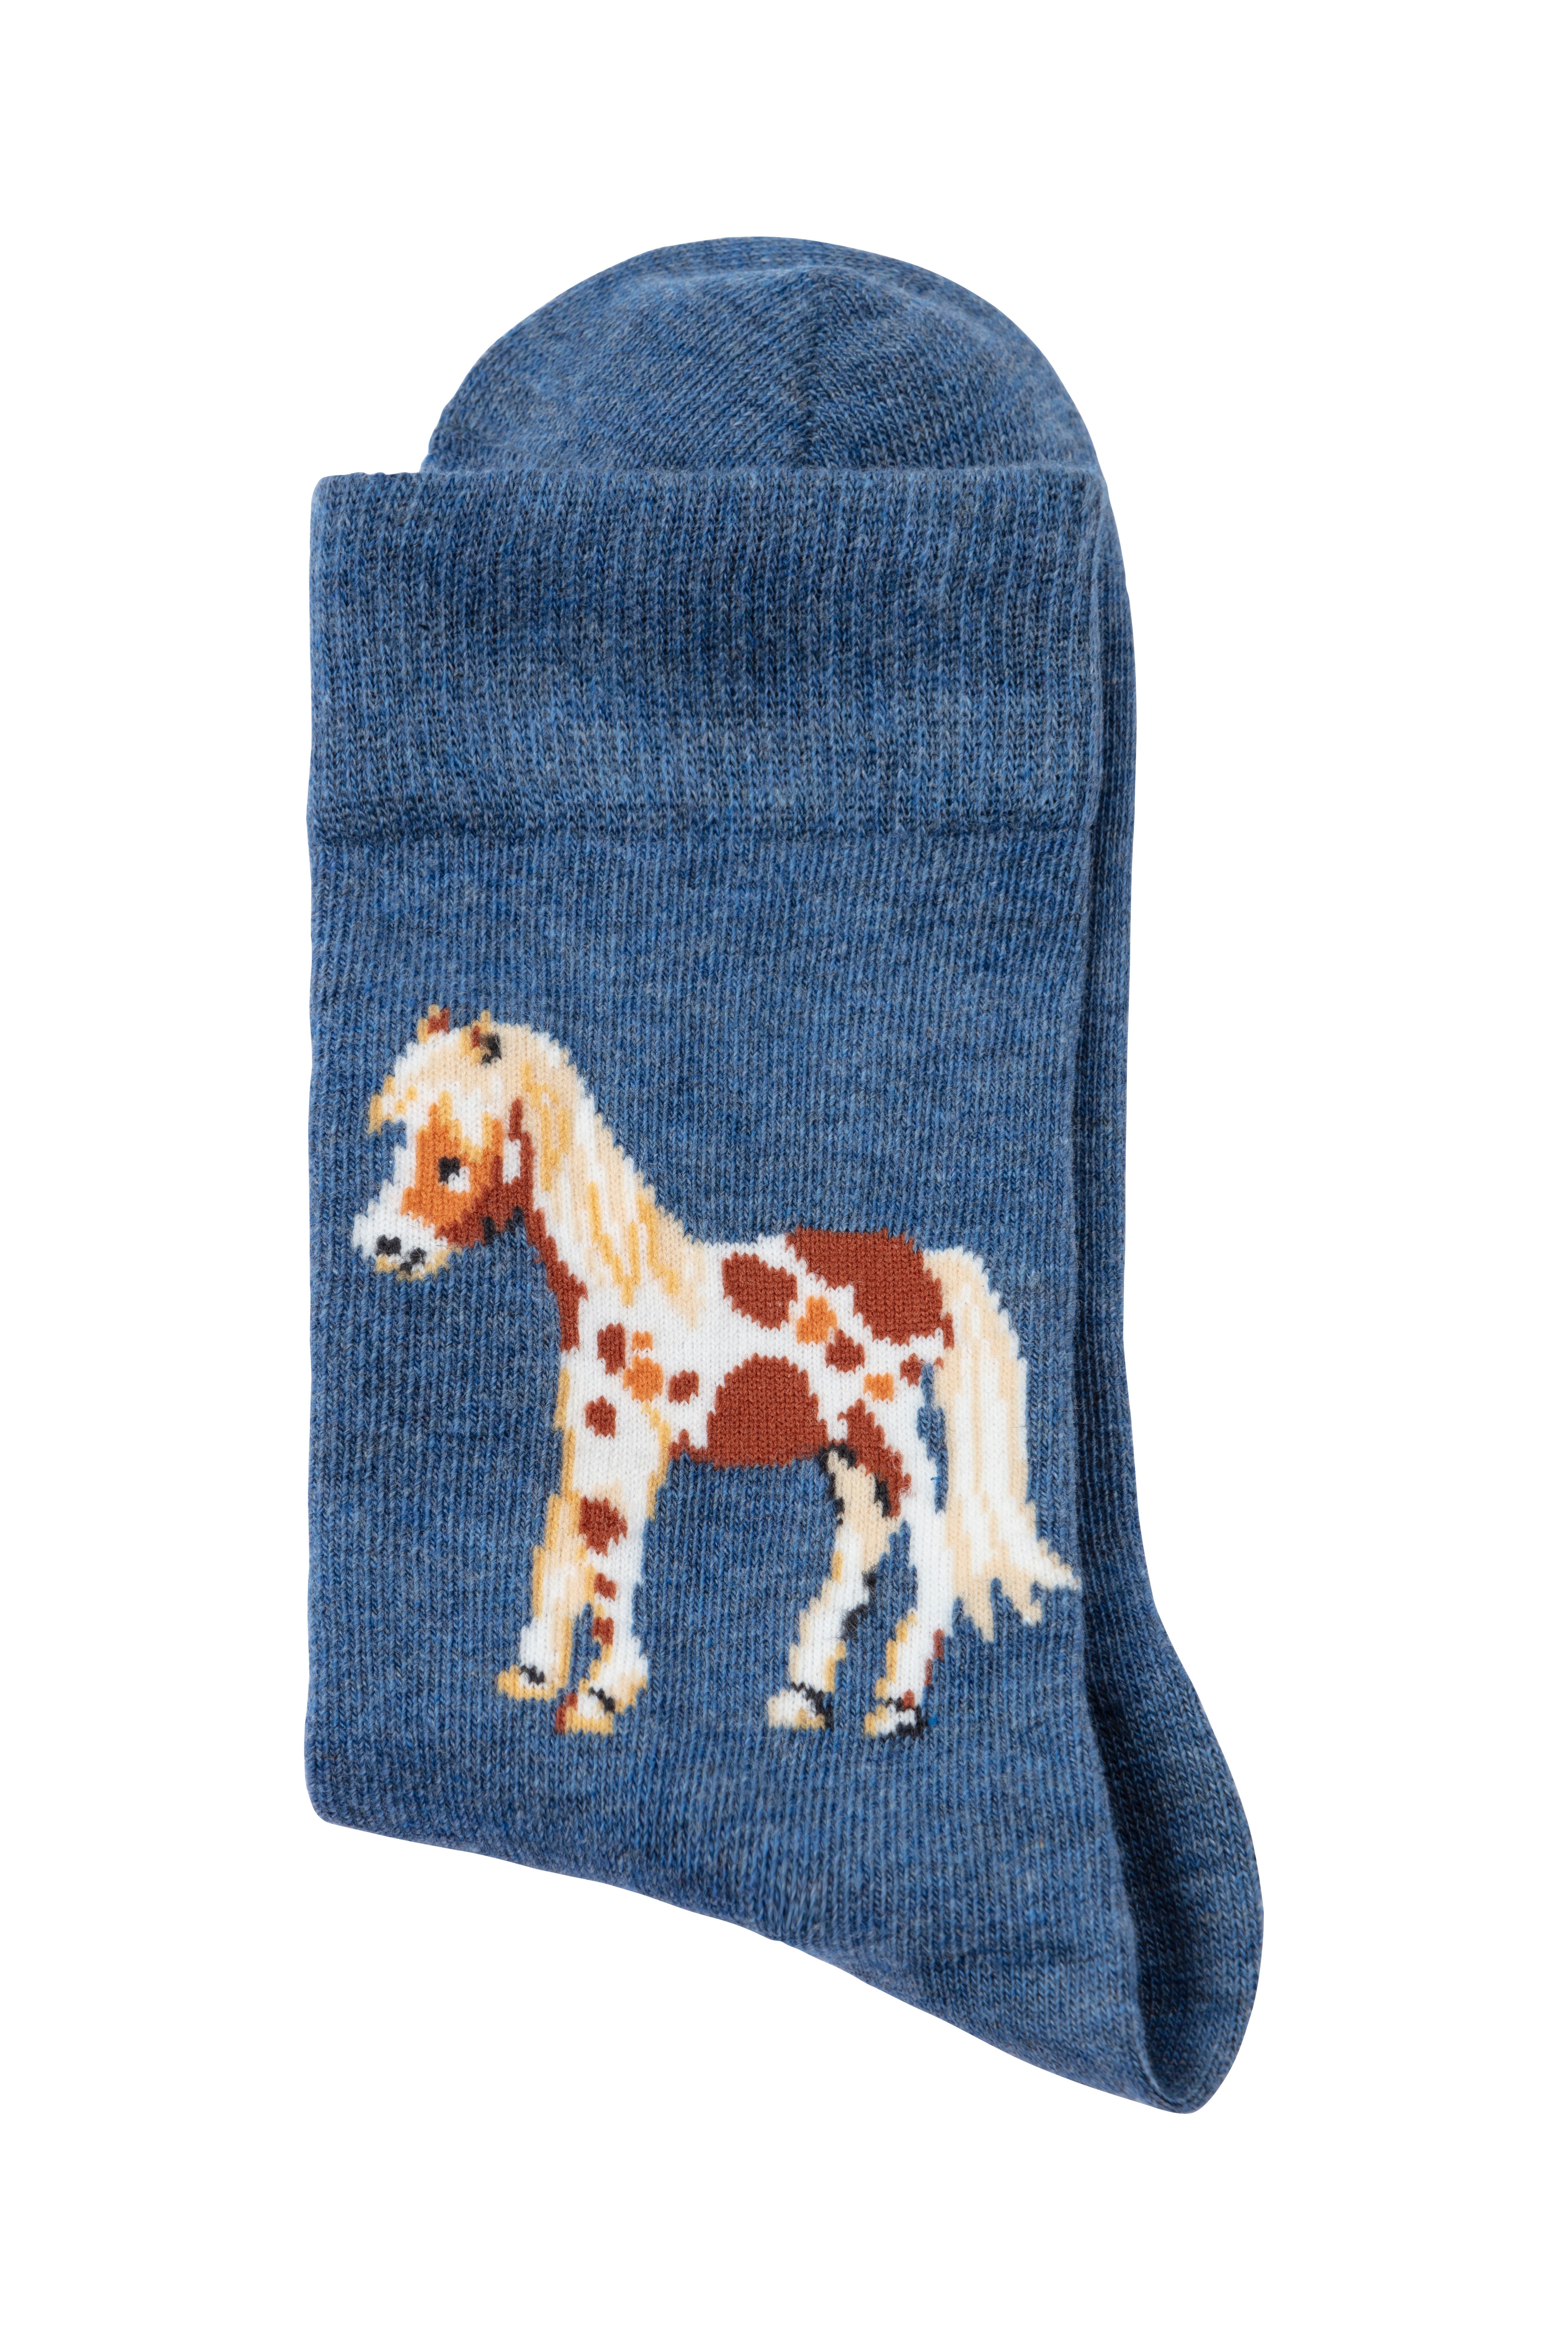 H.I.S unterschiedlichen Pferdemotiven Mit Socken (5-Paar)